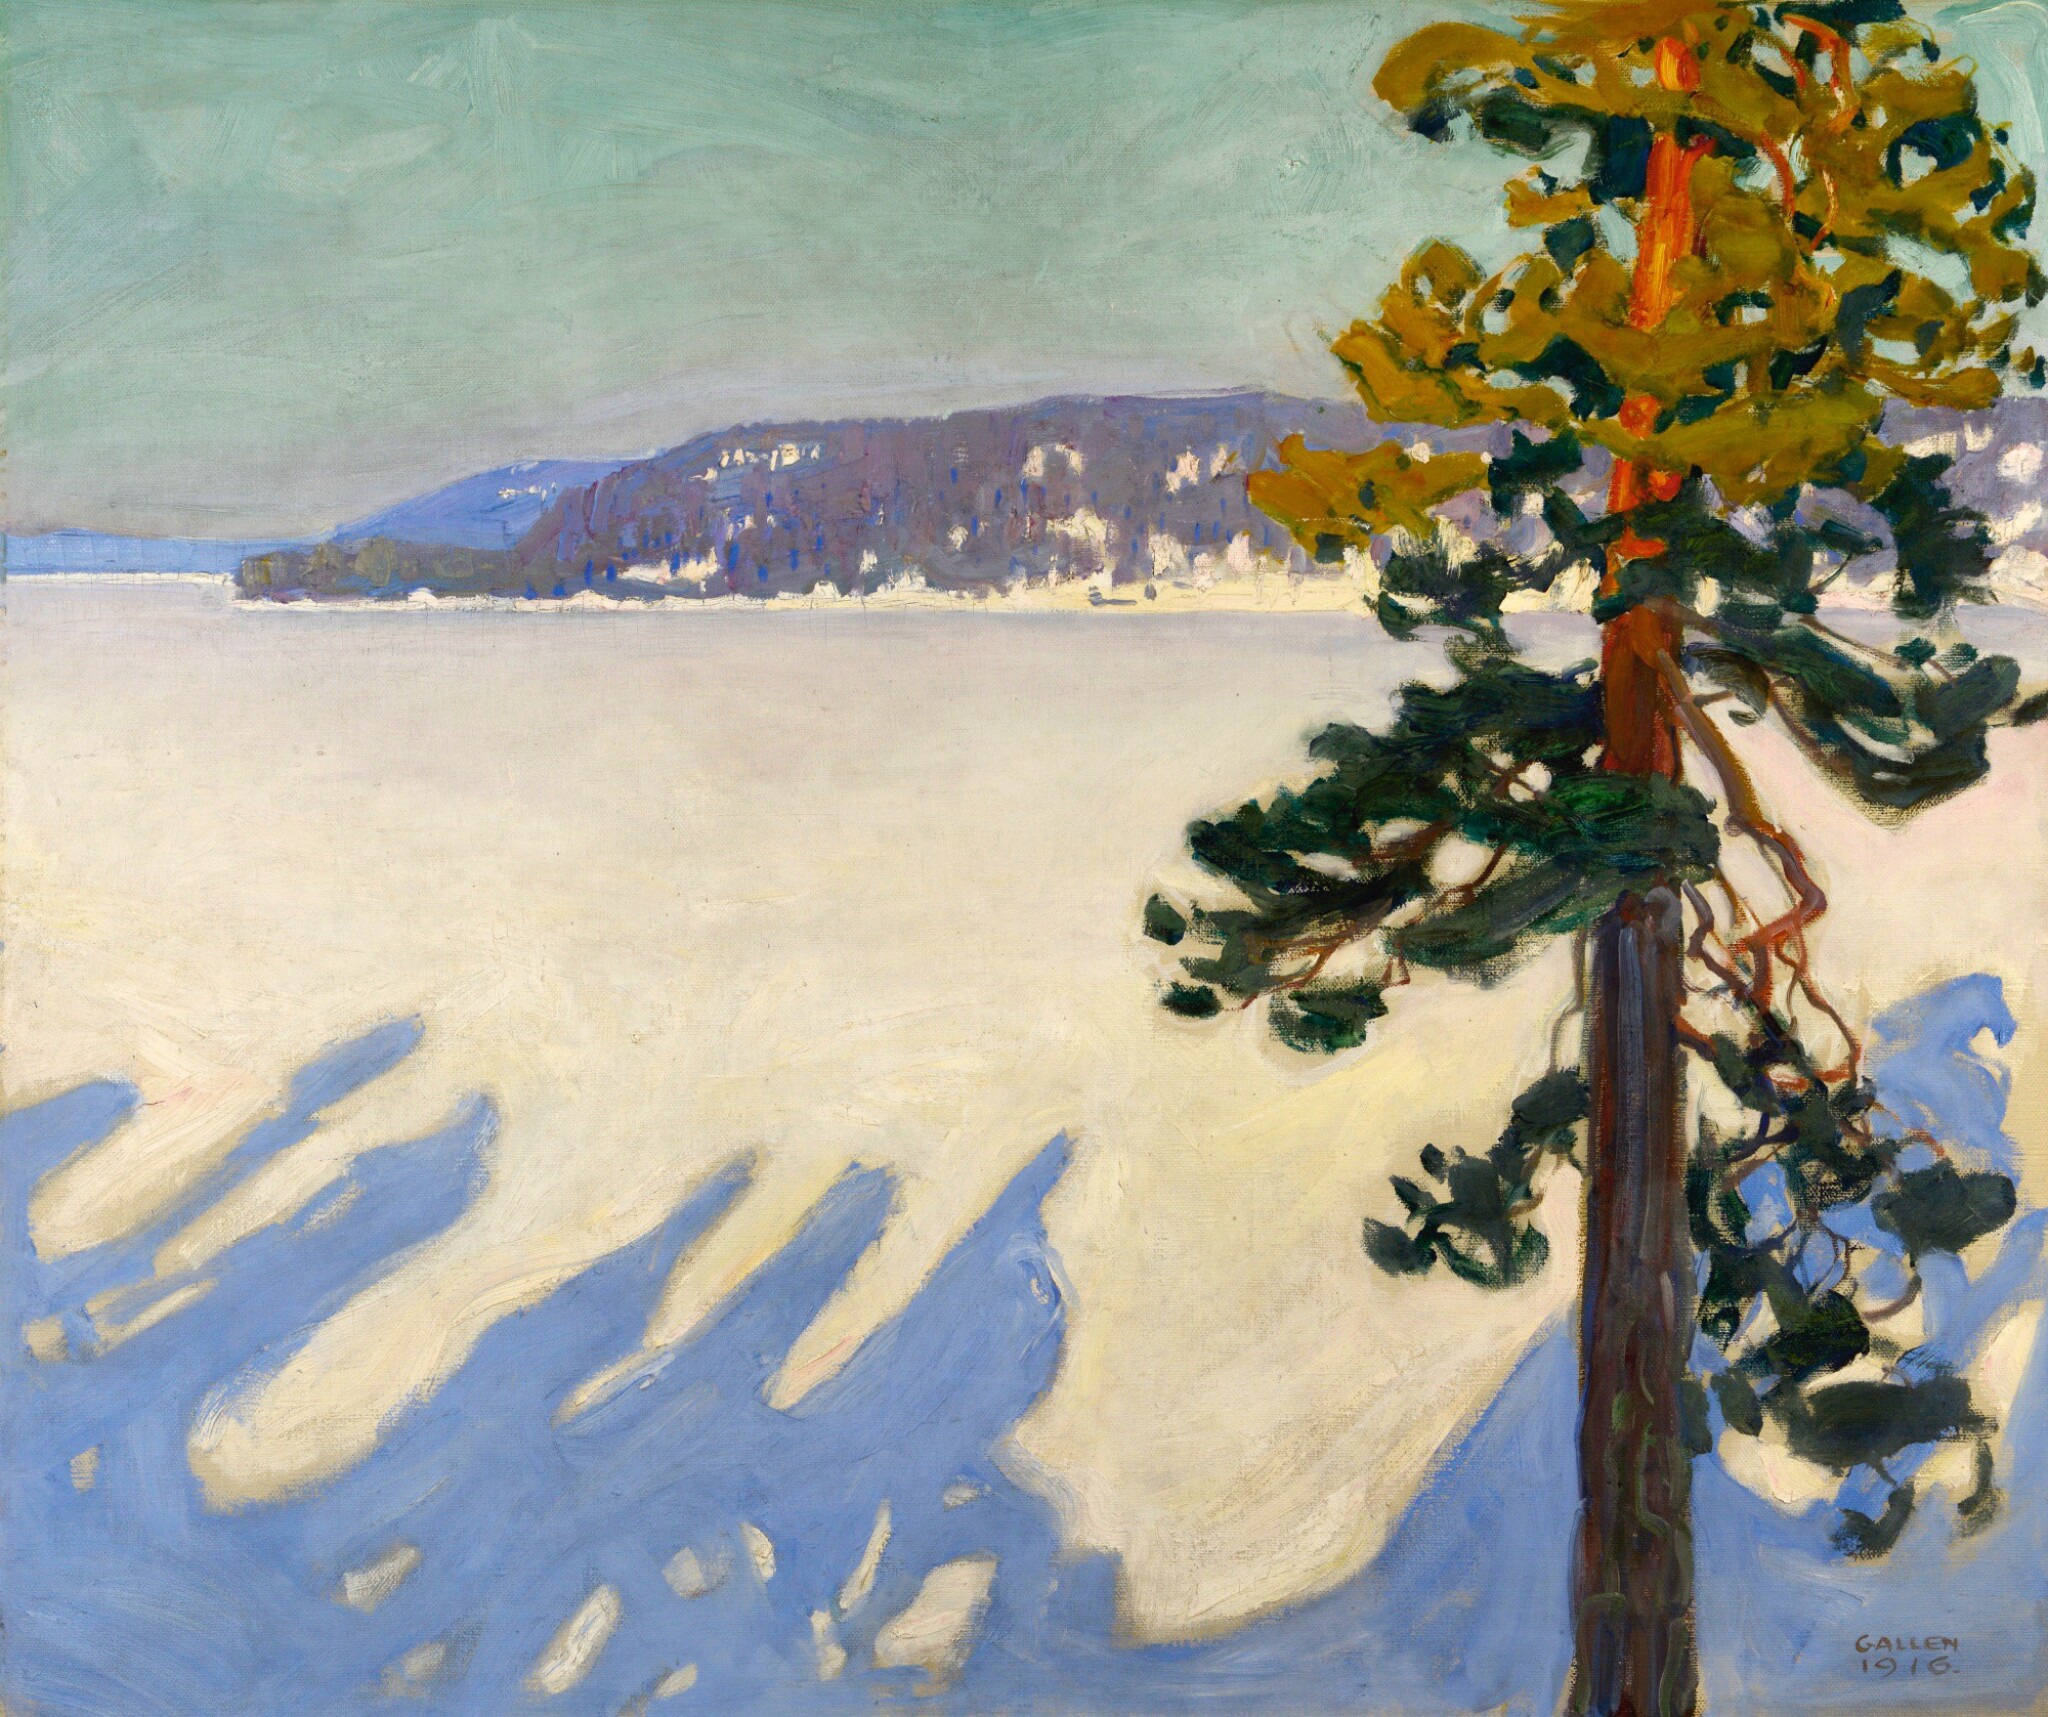 Le lac Ruovesi en hiver by Akseli Gallen-Kallela - 1916 - 102 x 119.5 cm collection privée